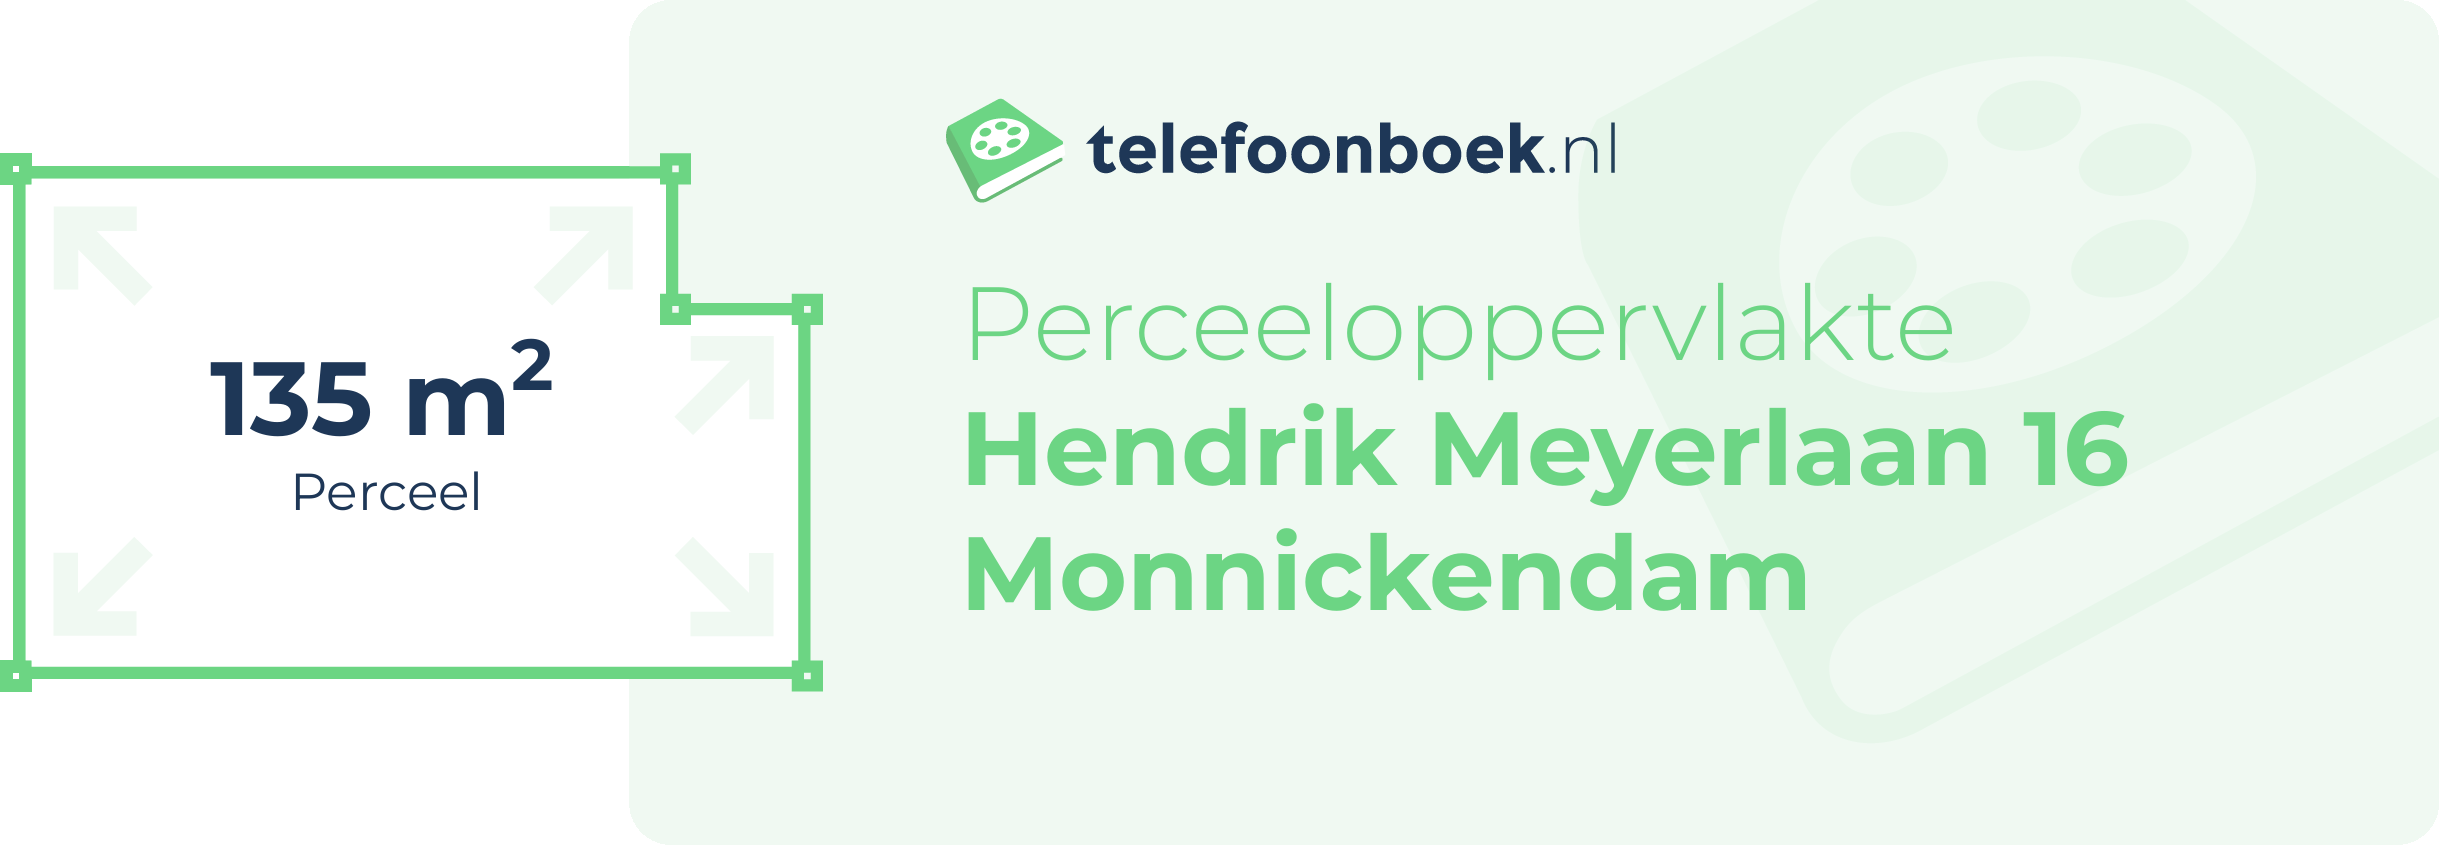 Perceeloppervlakte Hendrik Meyerlaan 16 Monnickendam